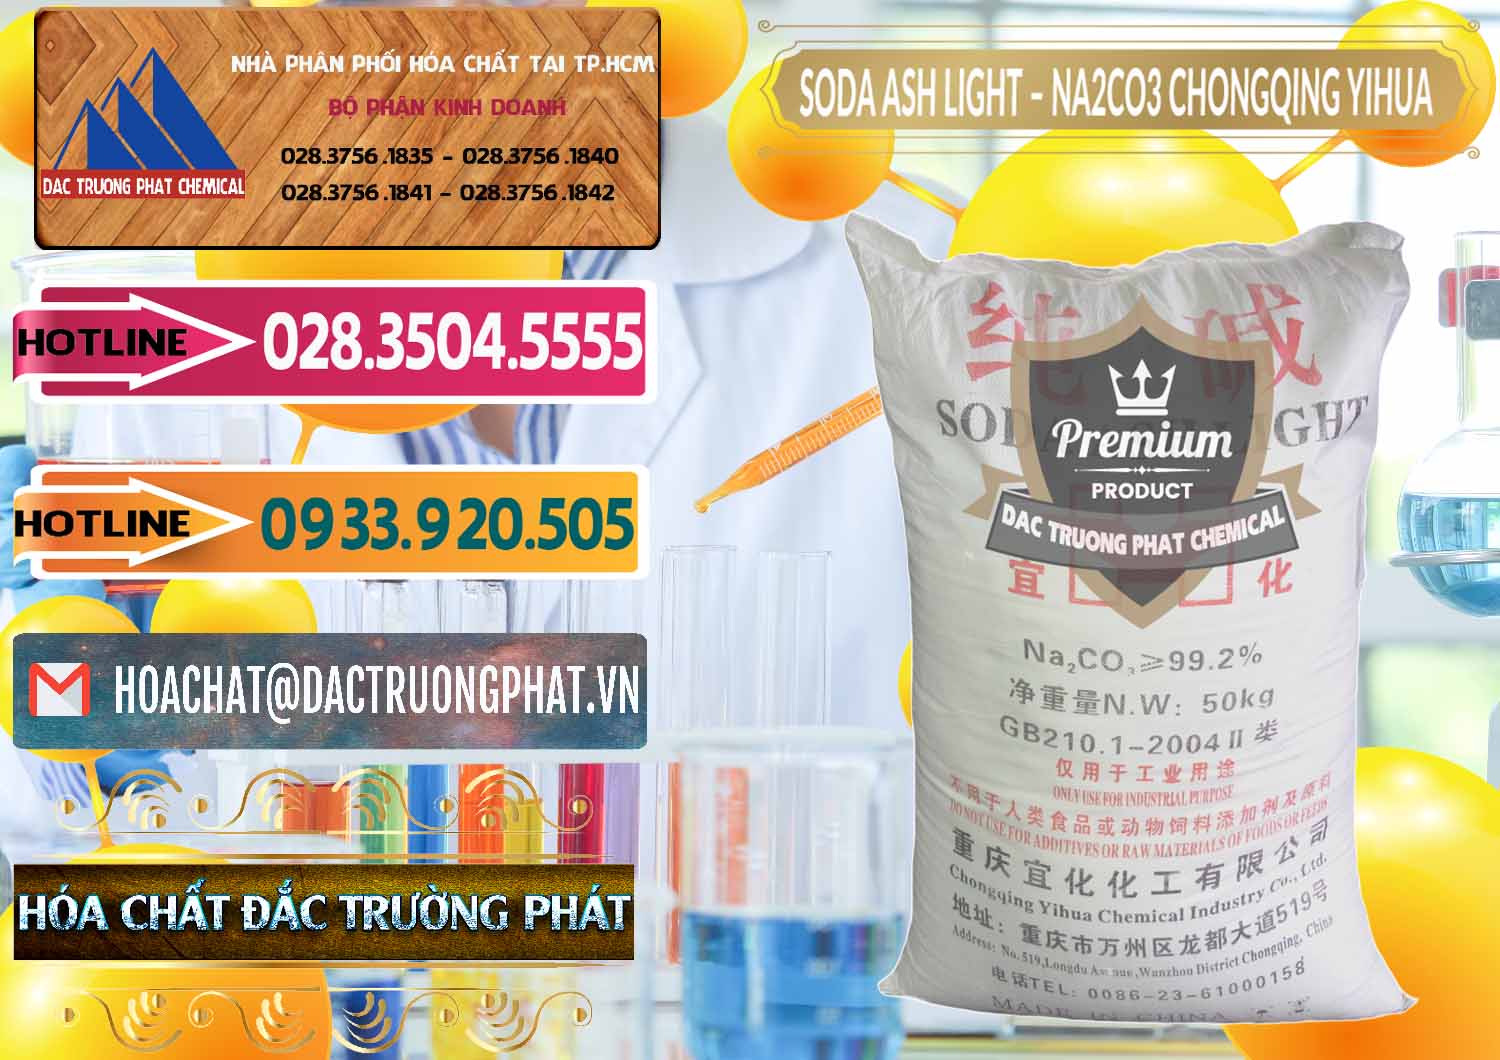 Cty chuyên bán _ cung cấp Soda Ash Light - NA2CO3 Chongqing Yihua Trung Quốc China - 0129 - Công ty chuyên cung cấp - kinh doanh hóa chất tại TP.HCM - dactruongphat.vn